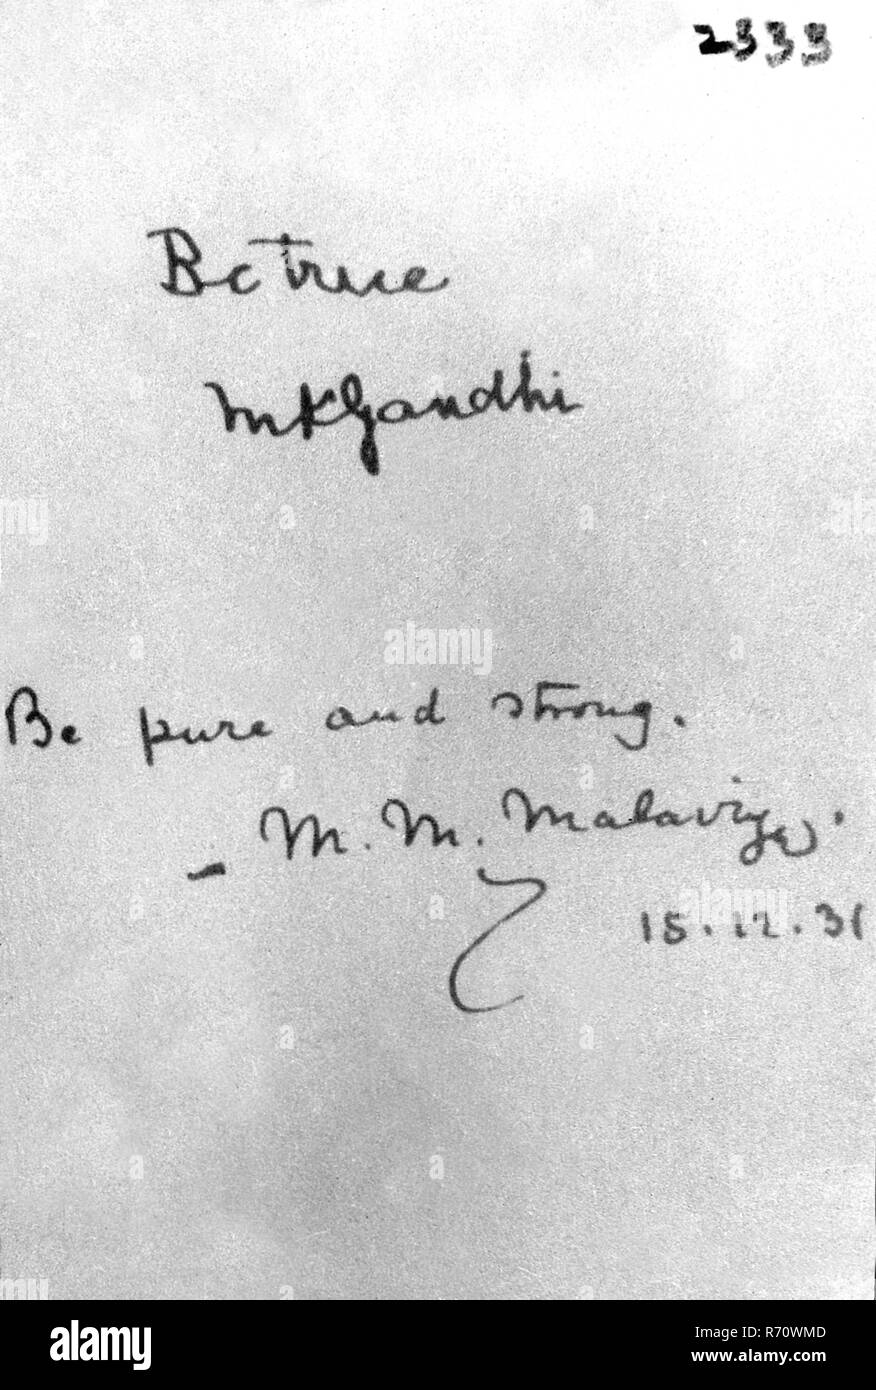 Essere vero, M.K. Gandhi, Mahatma Gandhi messaggio per un passeggero a bordo di SS Pilsna, e essere puro e forte da M. M. Malaviya, 15 dicembre 1930, vecchia immagine del 1900 Foto Stock